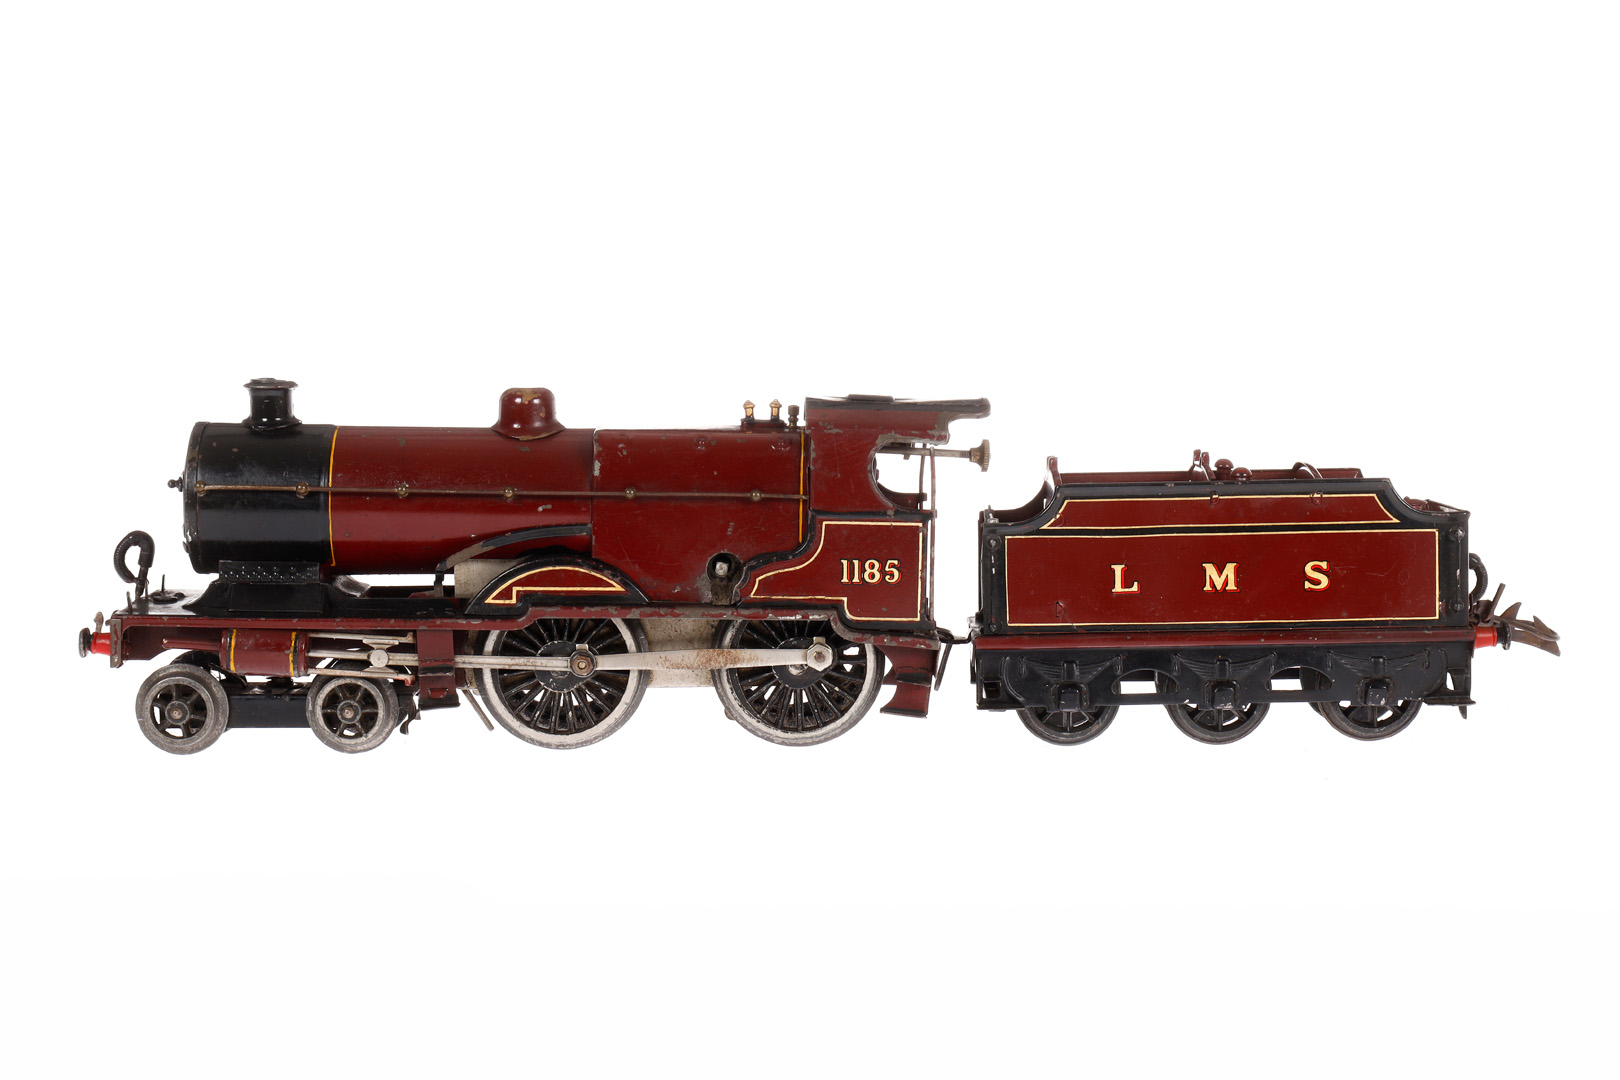 Hornby 2-B Dampflok 1185 LMS, Spur 0, rotbraun/schwarz, mit Tender, Uhrwerk def., ohne